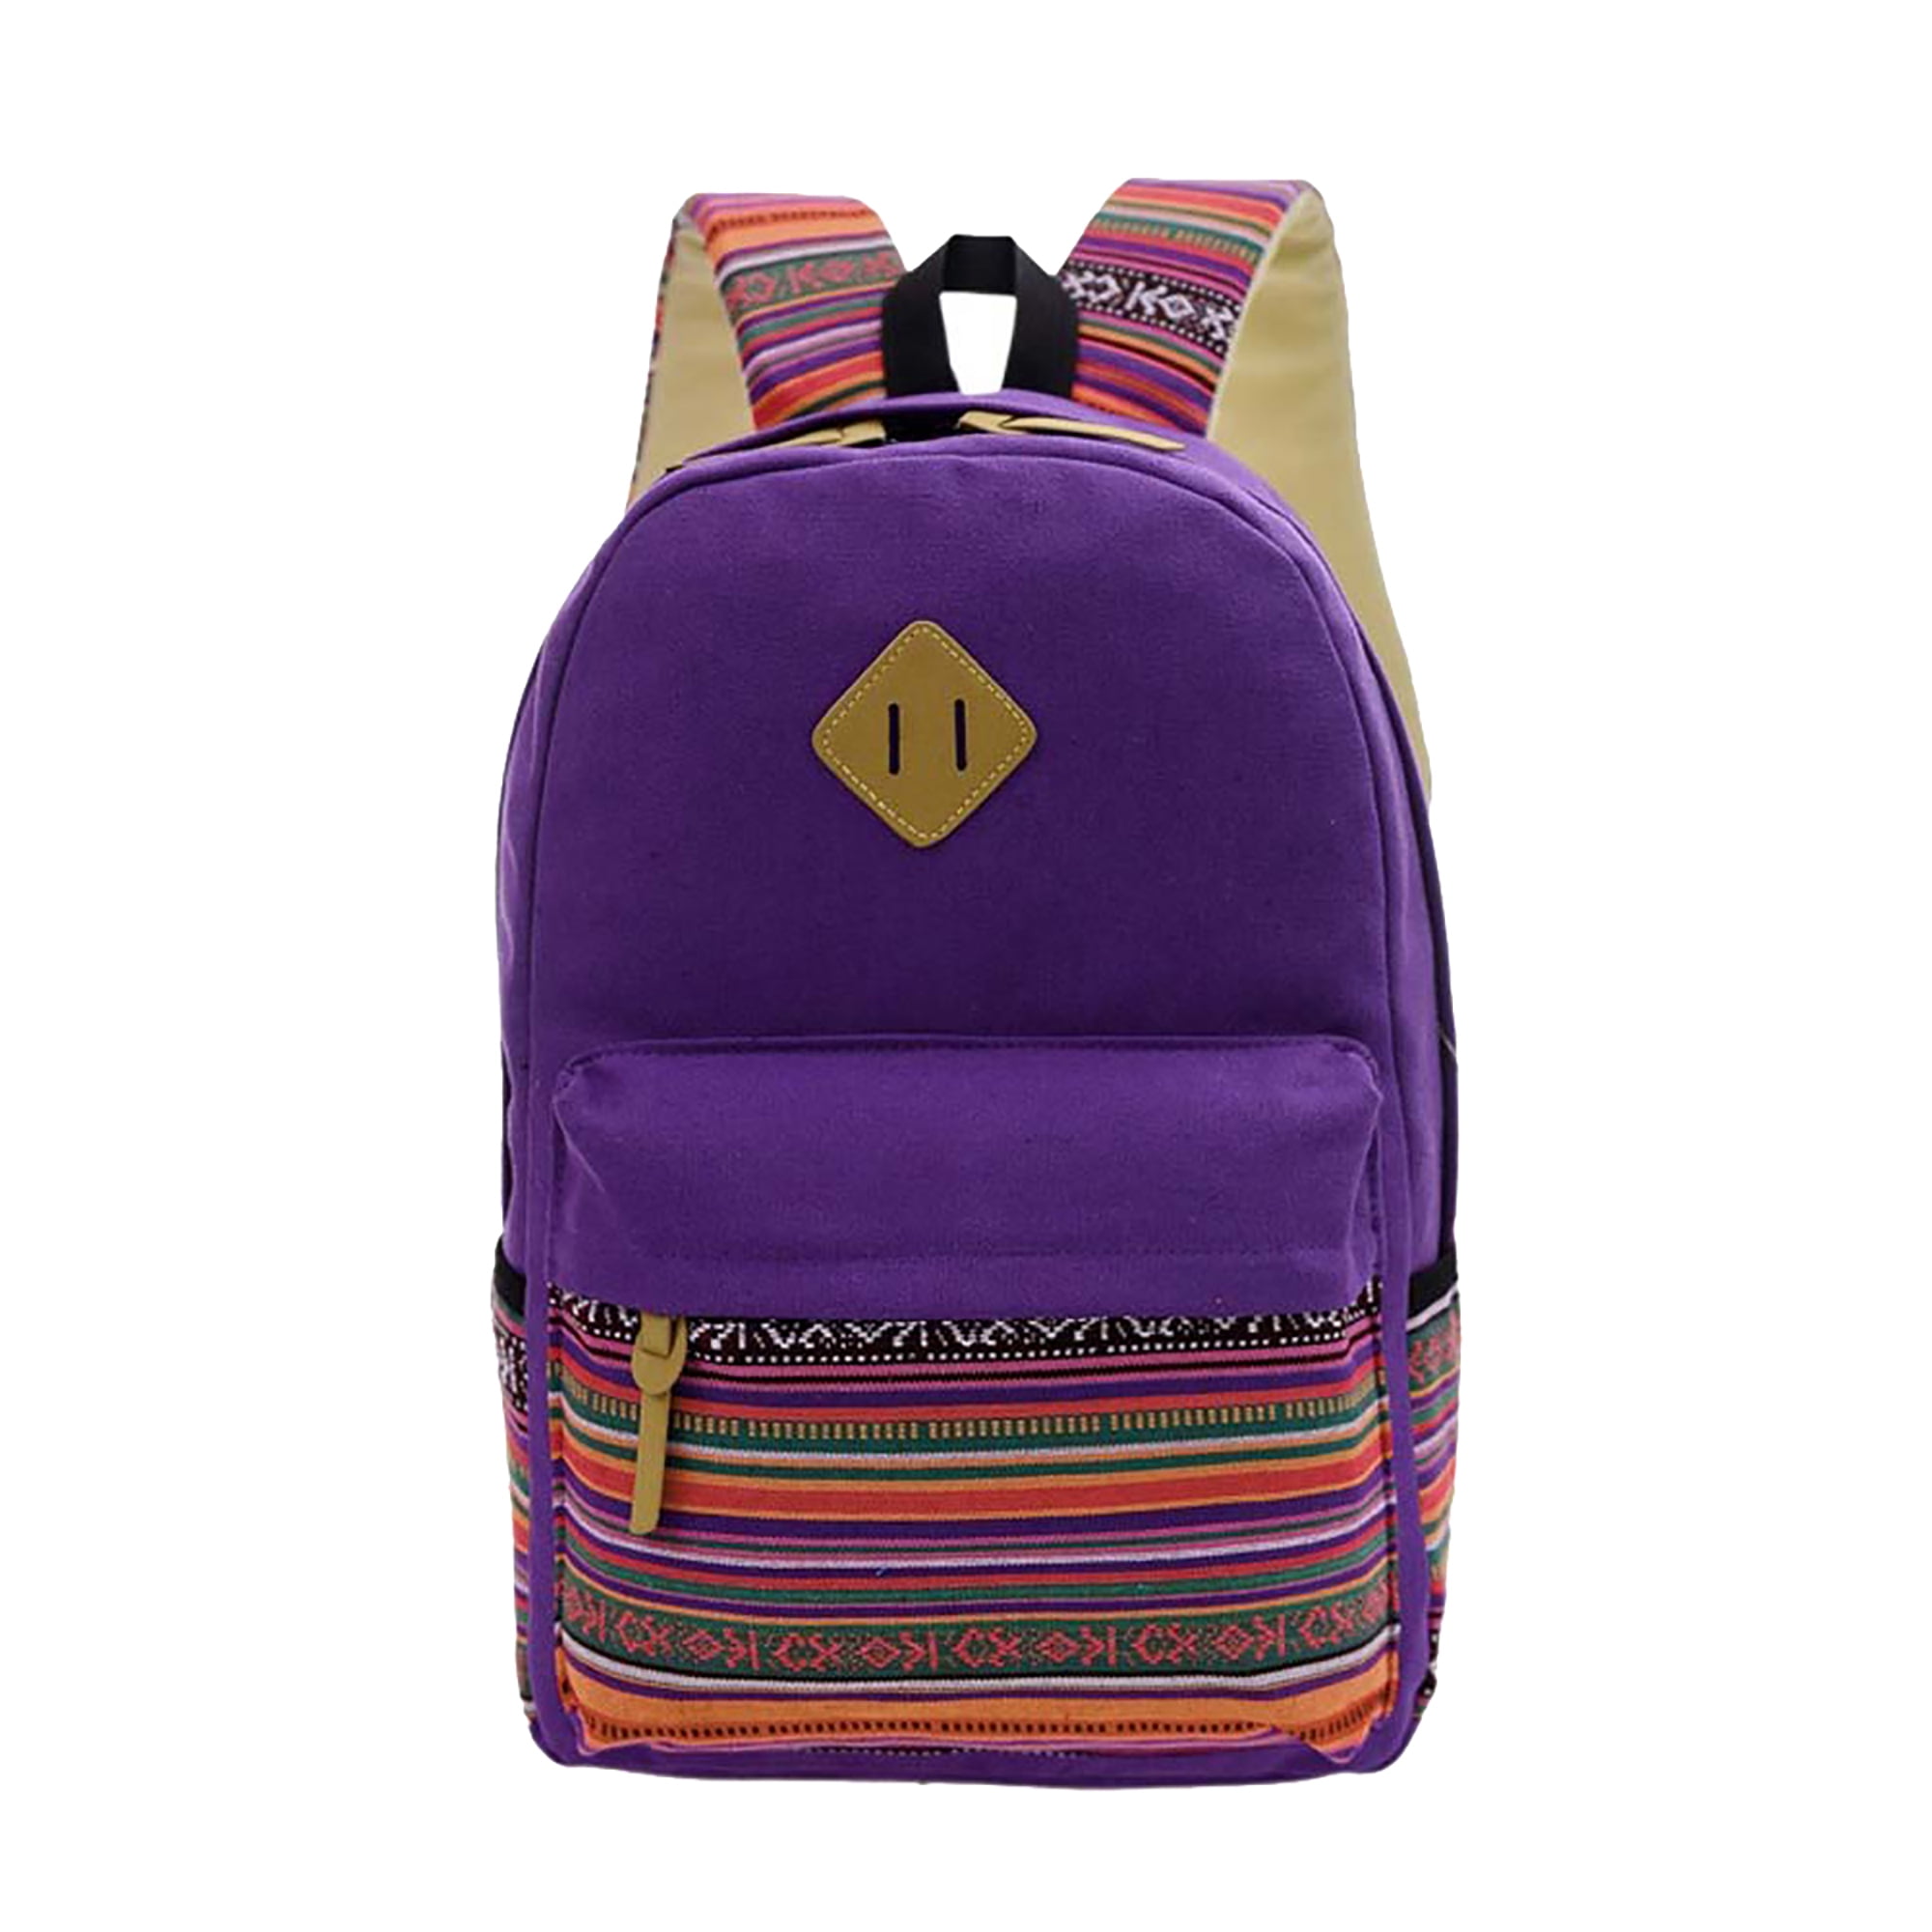 Backpack Shoulder Bag Travel Bags Laptop Bag School Bag For Boys Girls